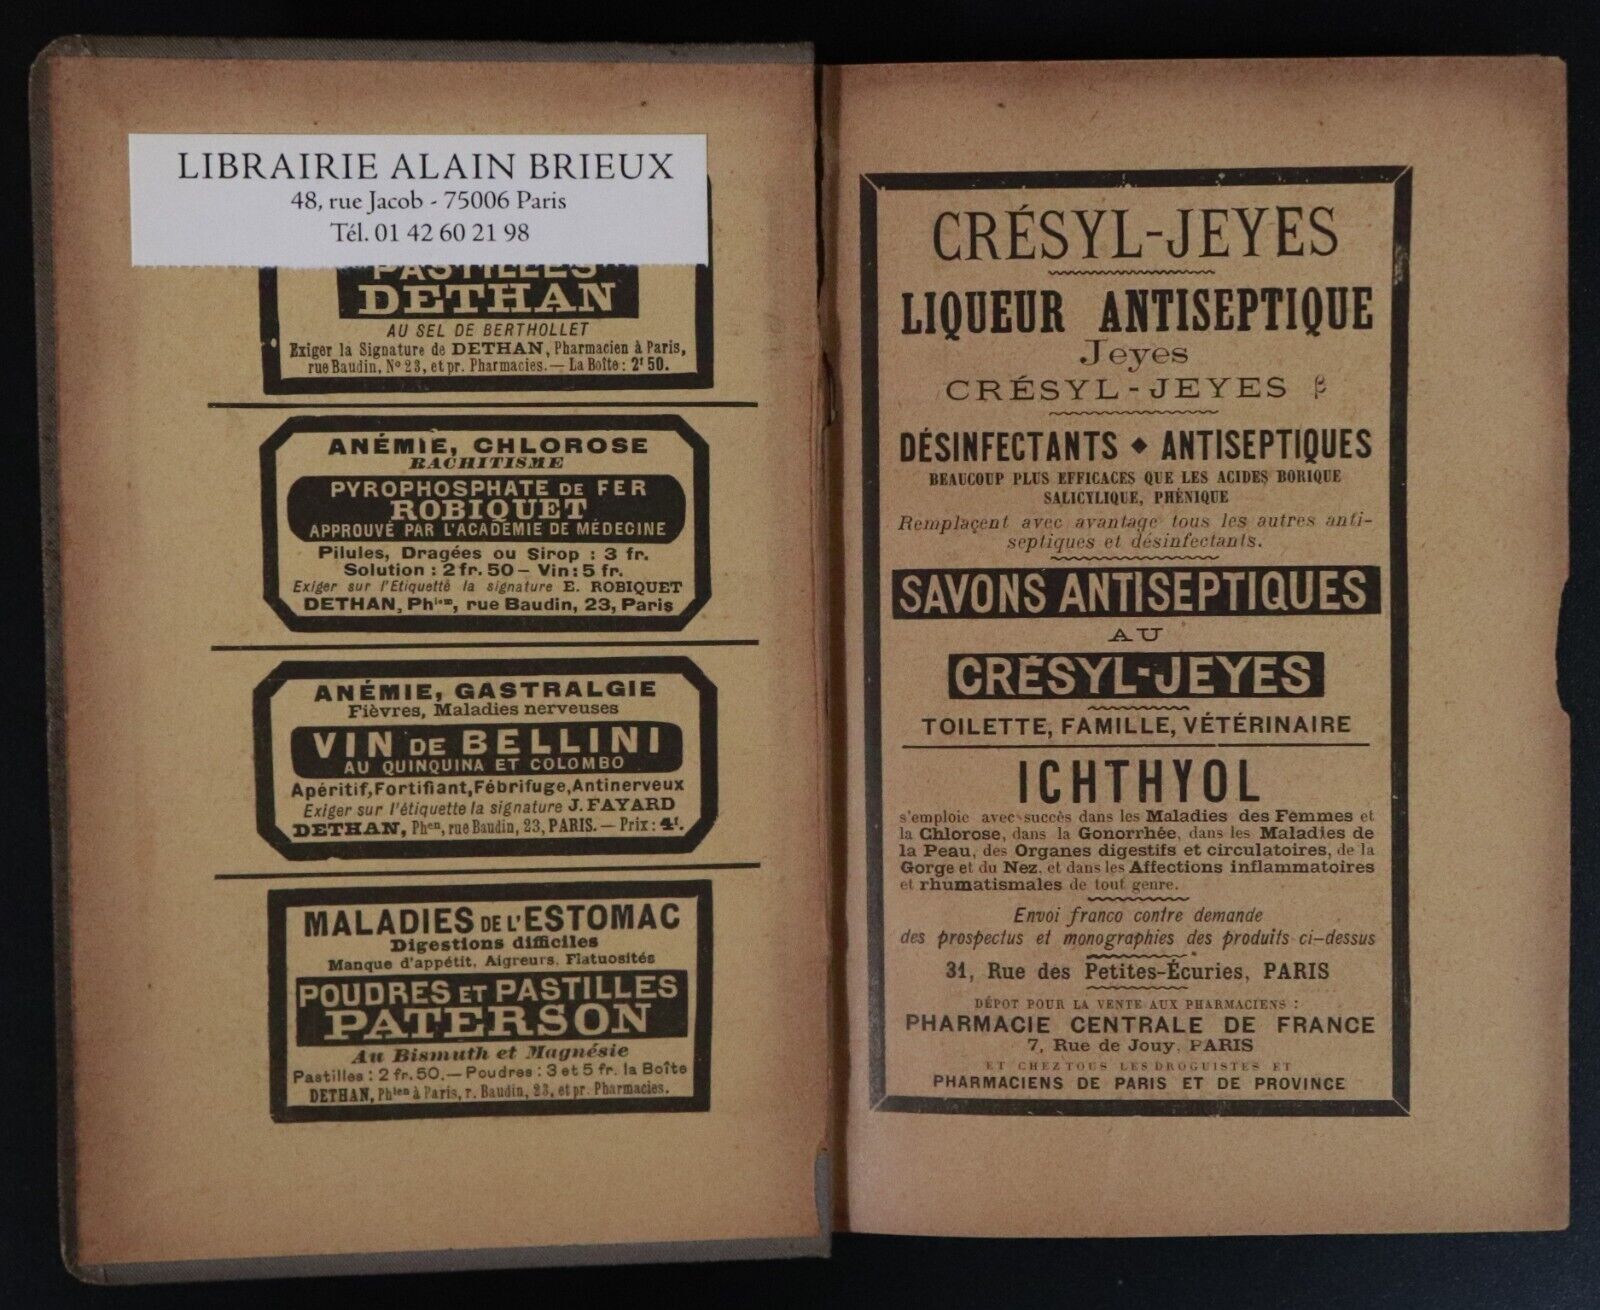 1893 Formulaire Medicaments Nouveaux by H Bocquillon Limousin Medical Book